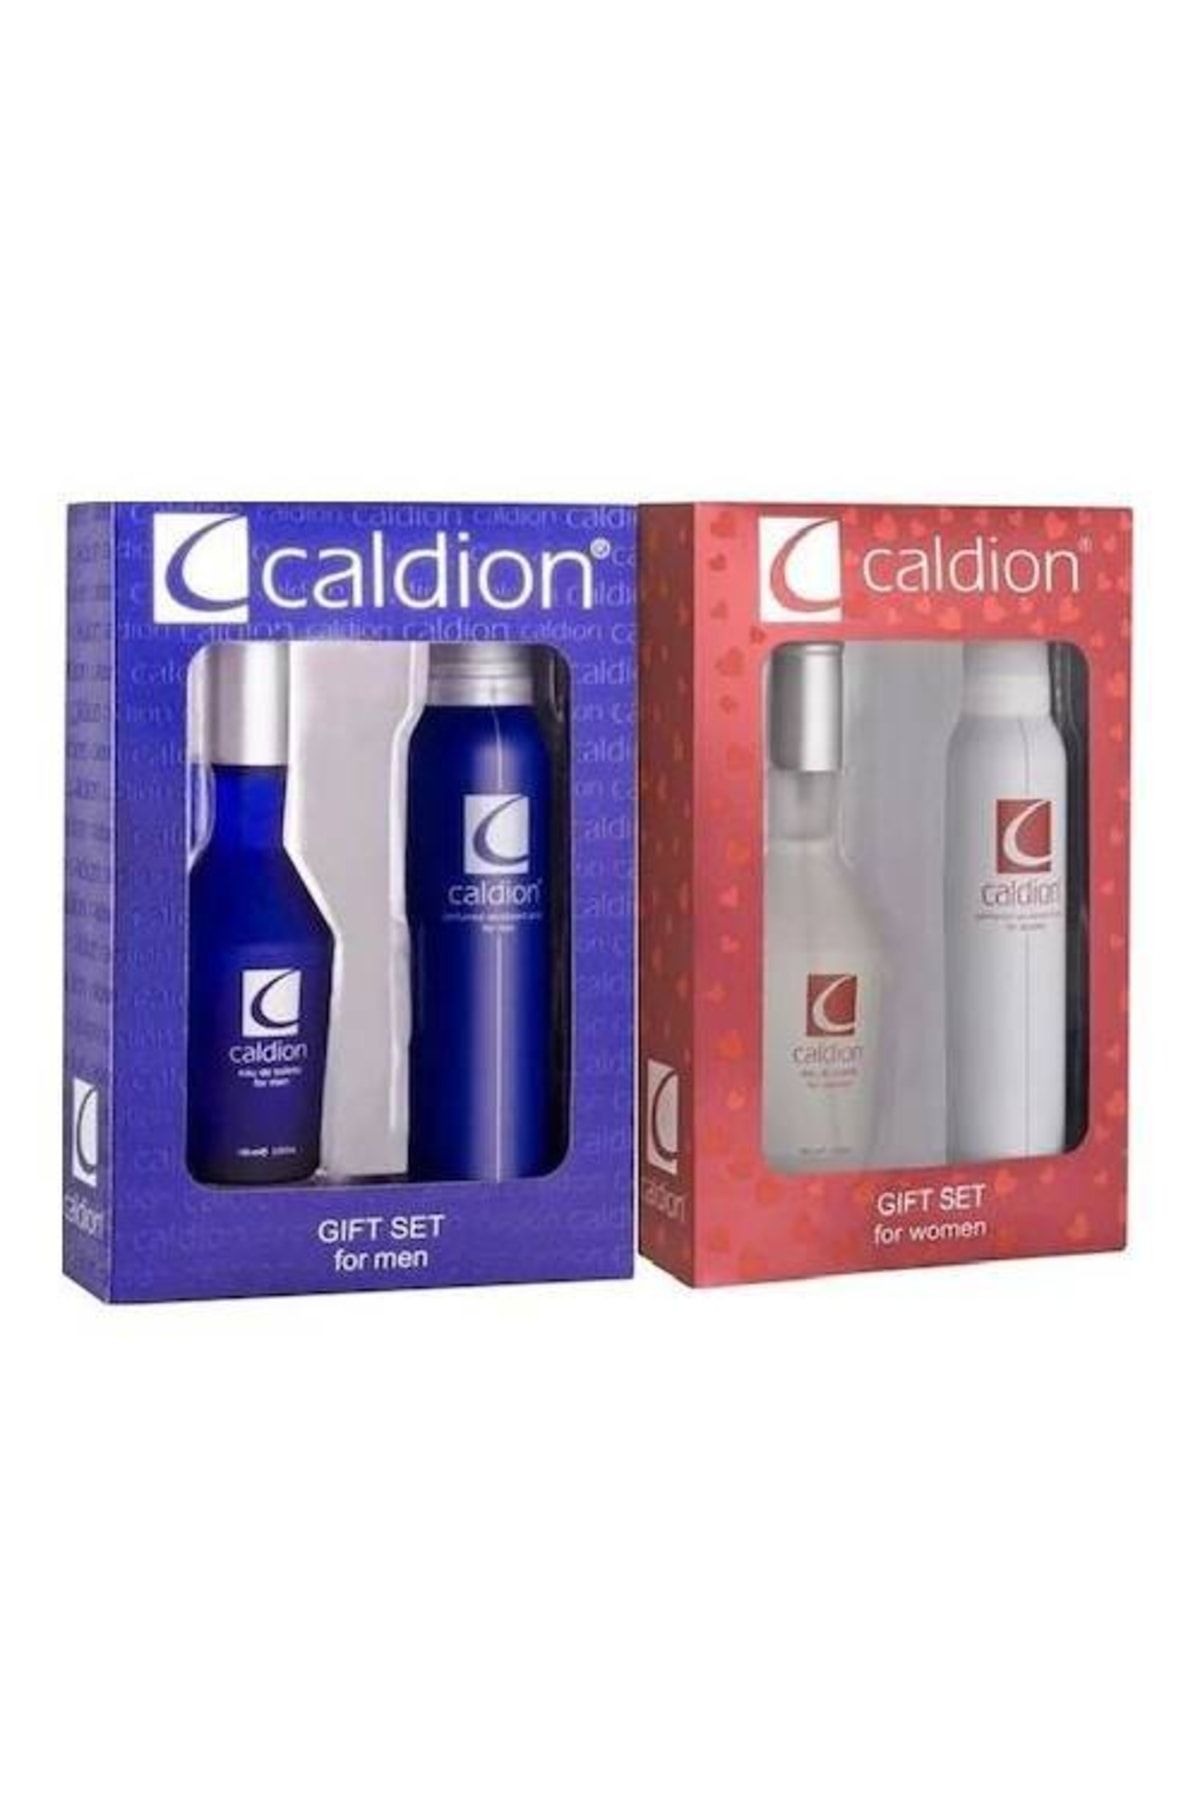 Caldion Classic Erkek Ve Kadın Parfüm Dedorant Seti 100 ml 8680056251593 Cinsiyet: Unisex H